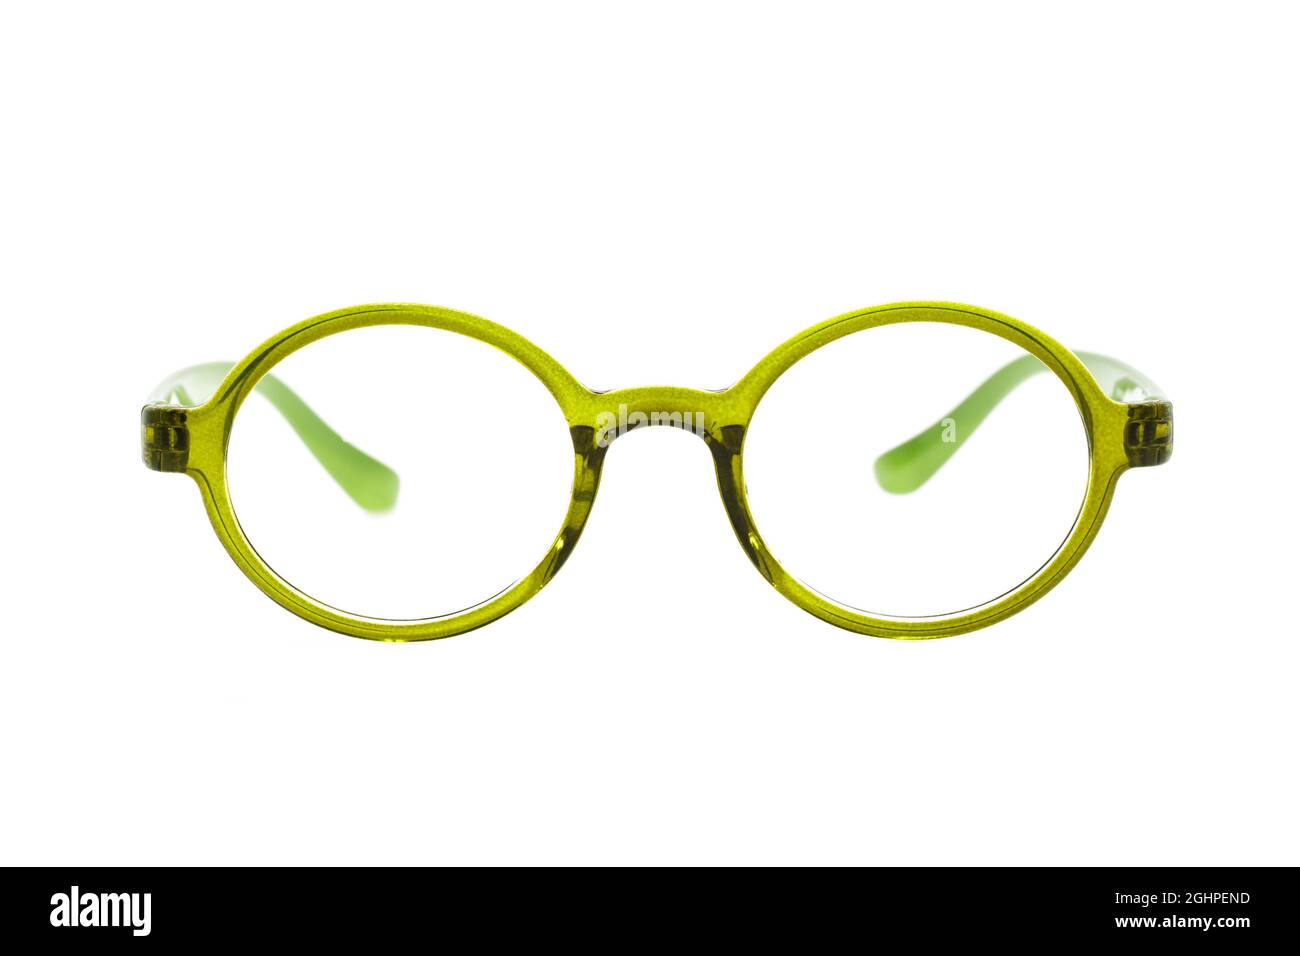 Image de lunettes modernes et tendance isolées sur fond blanc, lunettes, lunettes Banque D'Images